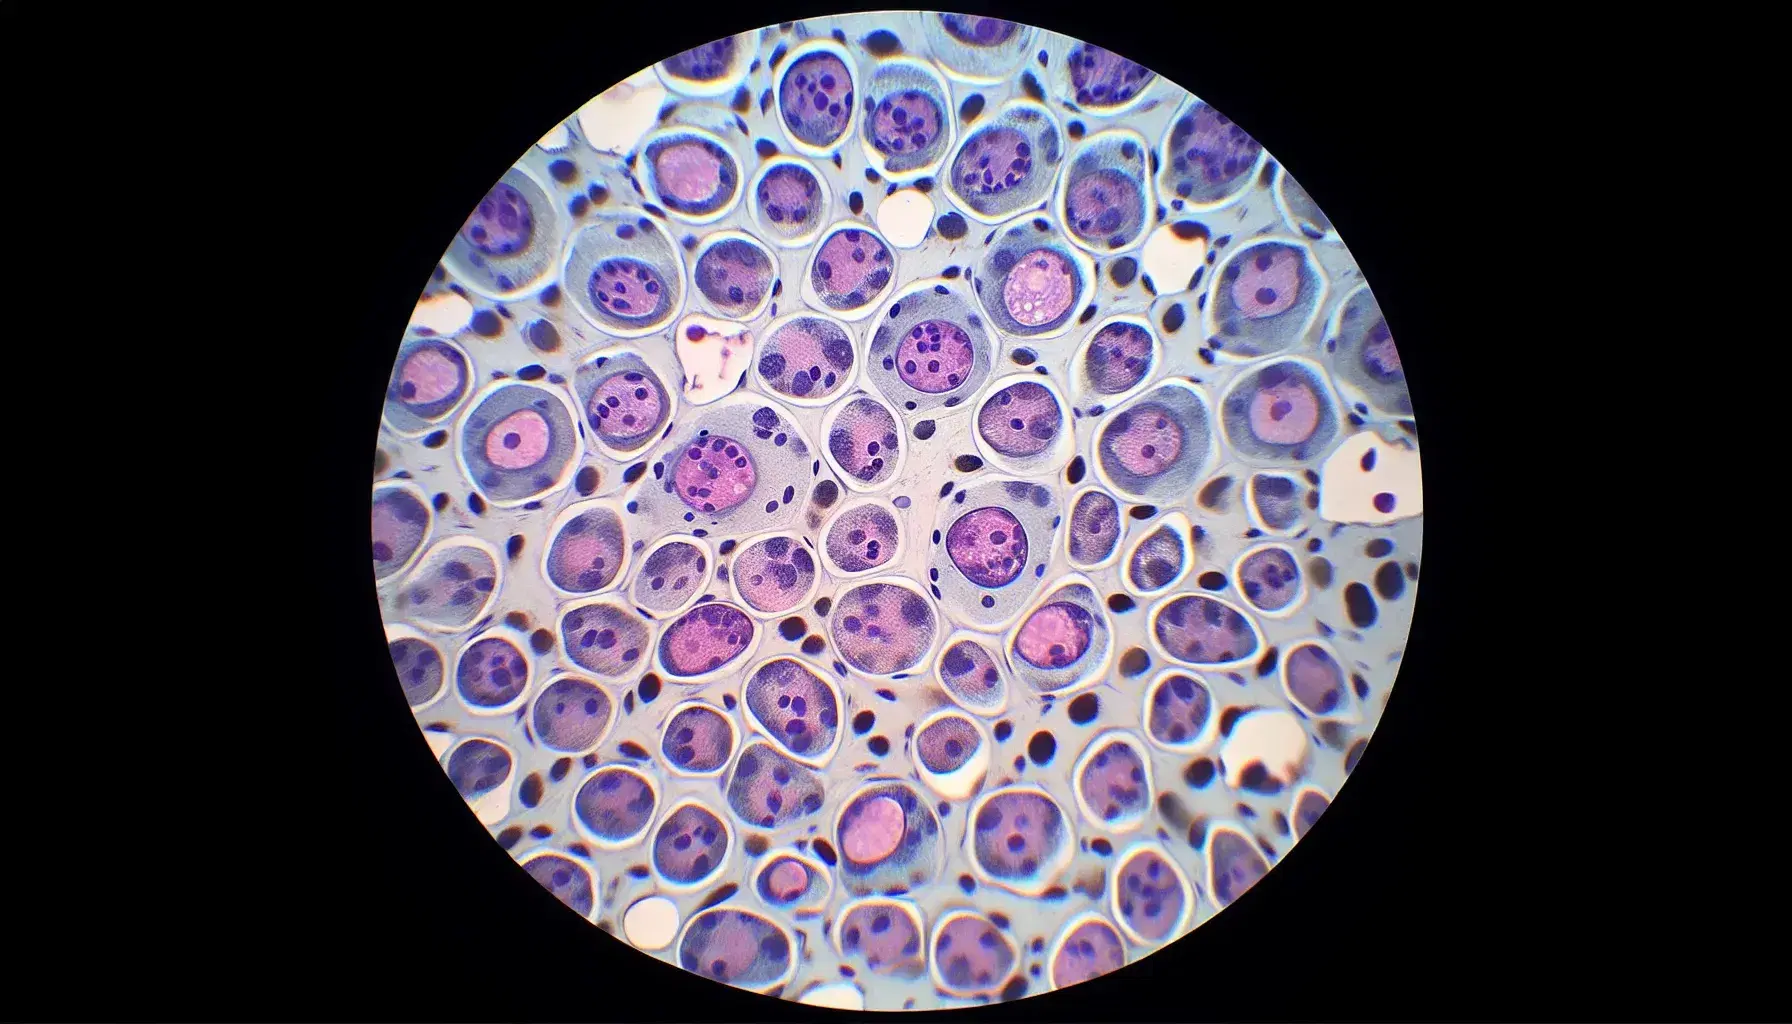 Vista microscópica de células humanas teñidas en tejido con núcleos púrpura y citoplasma claro, mostrando la estructura celular y el entorno extracelular.